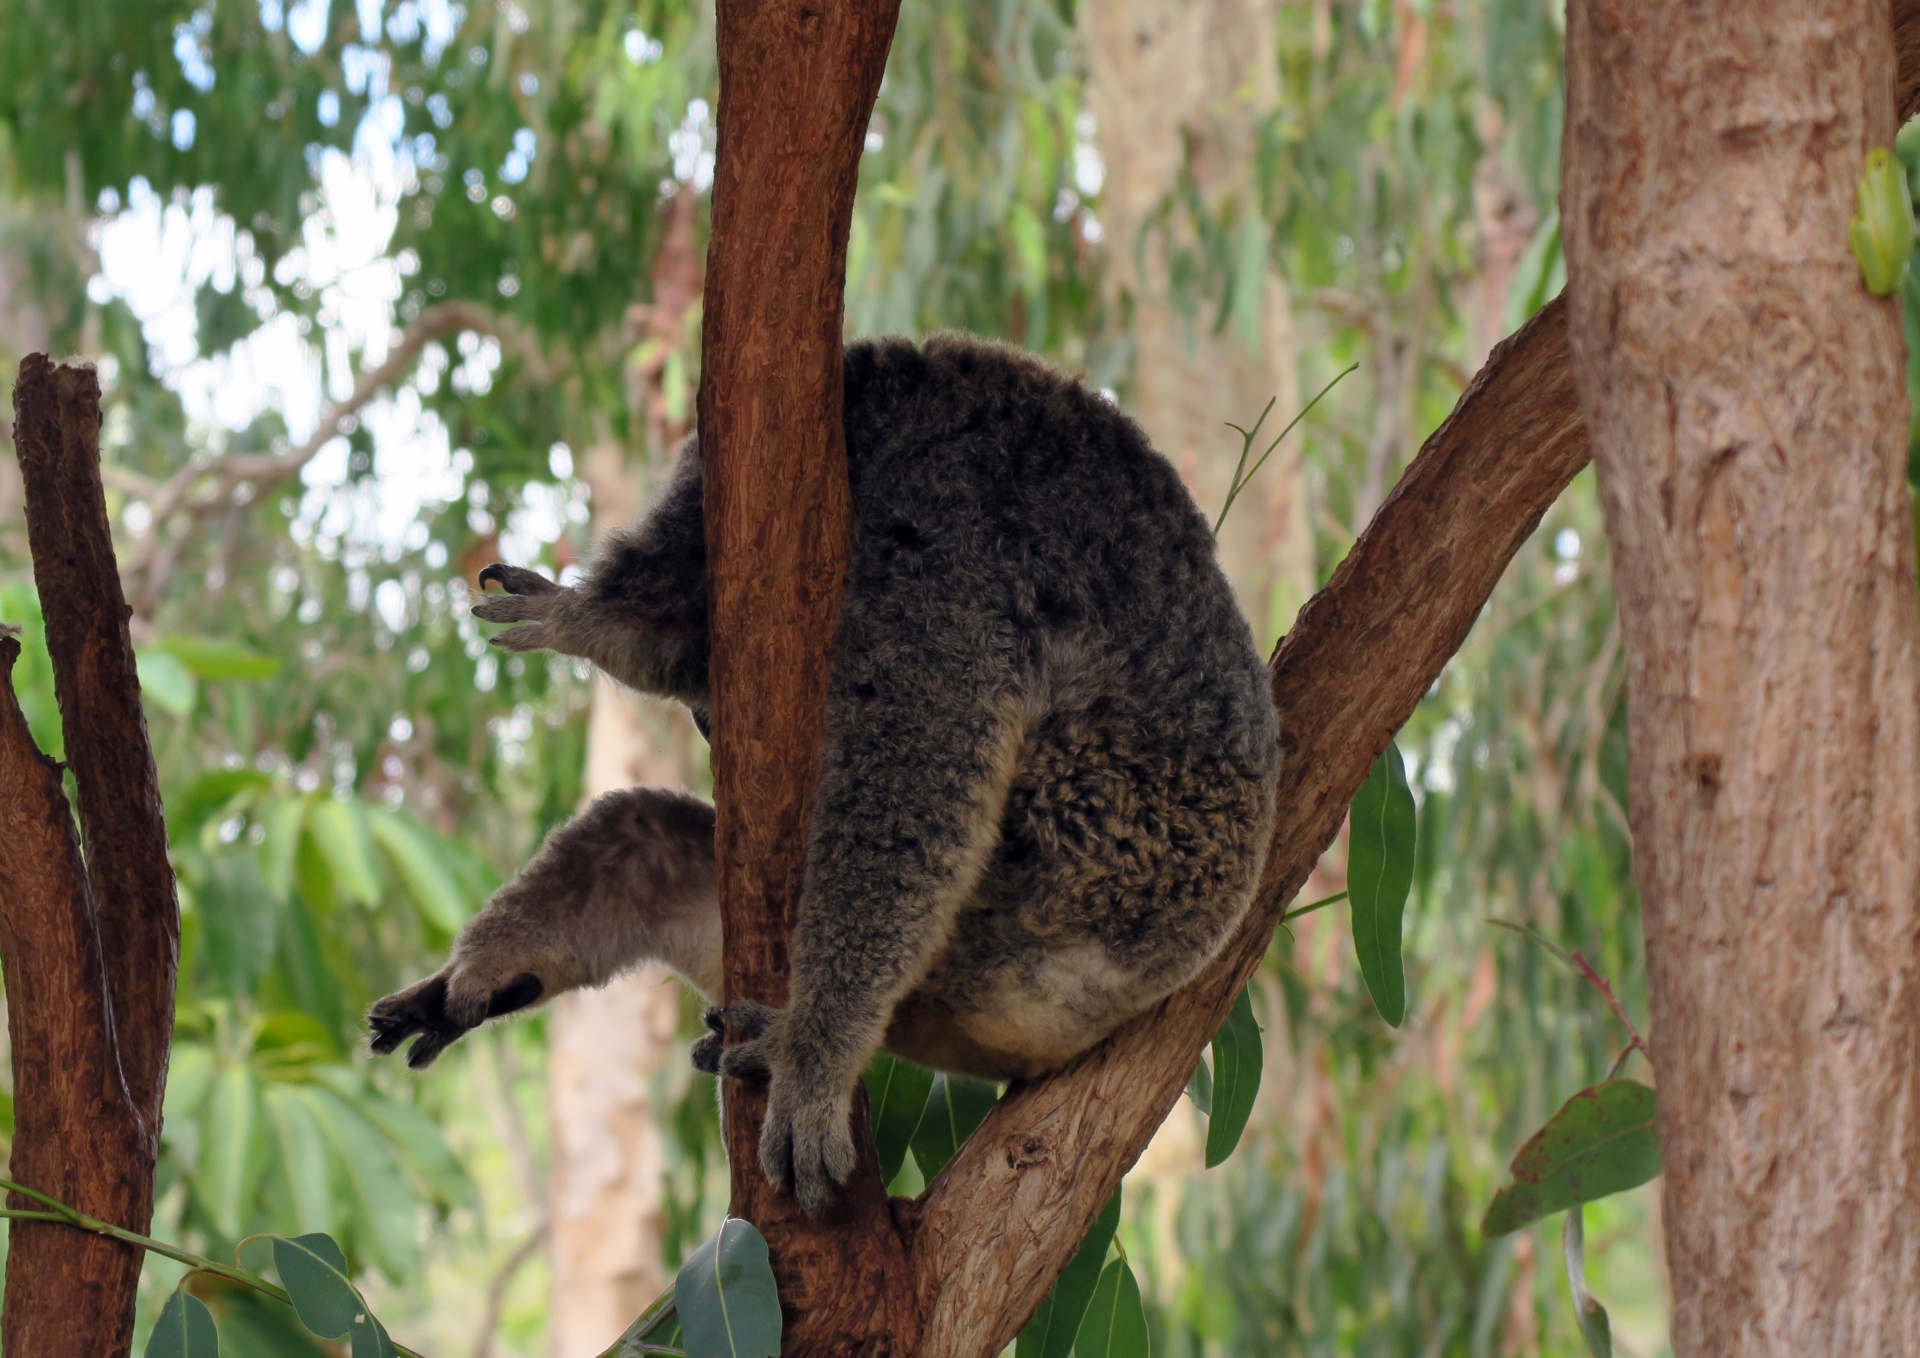 Sleepy Koala at Billabong Sanctuary